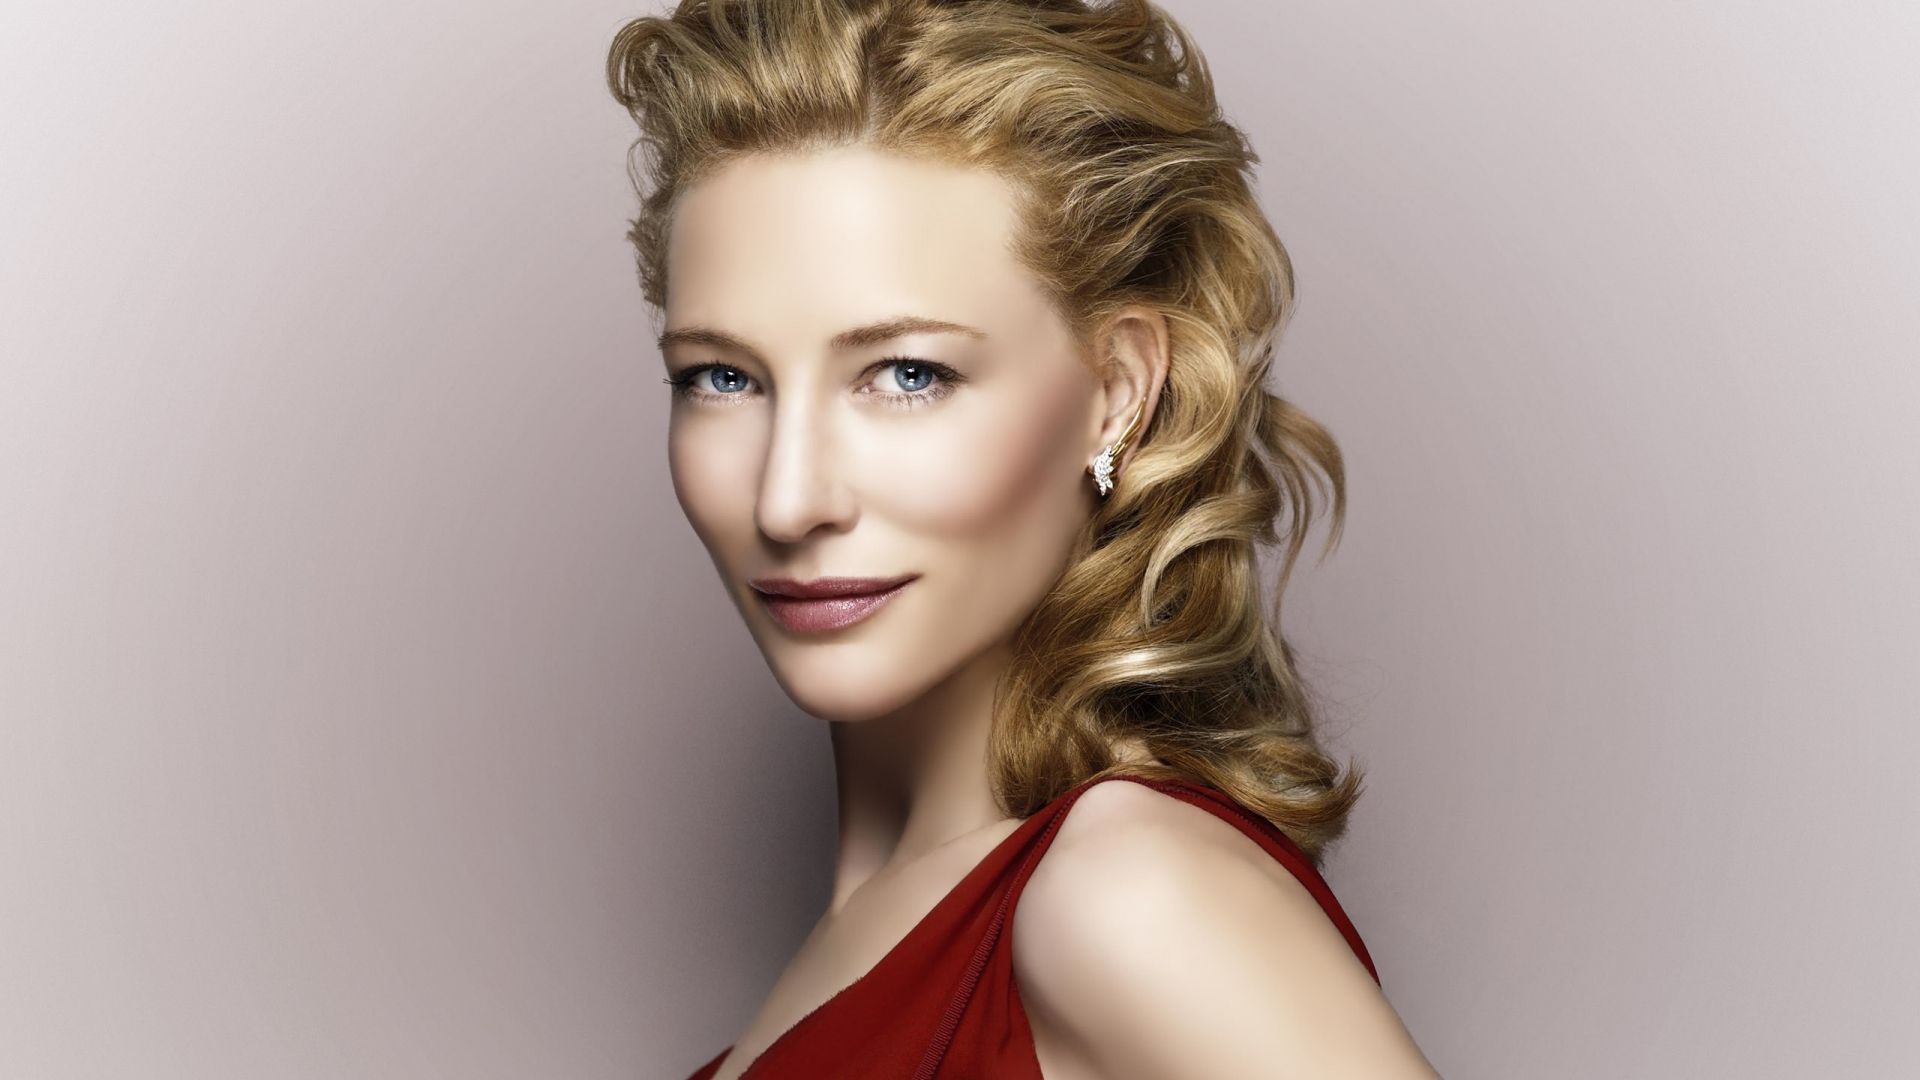 Cate Blanchett for 1920 x 1080 HDTV 1080p resolution